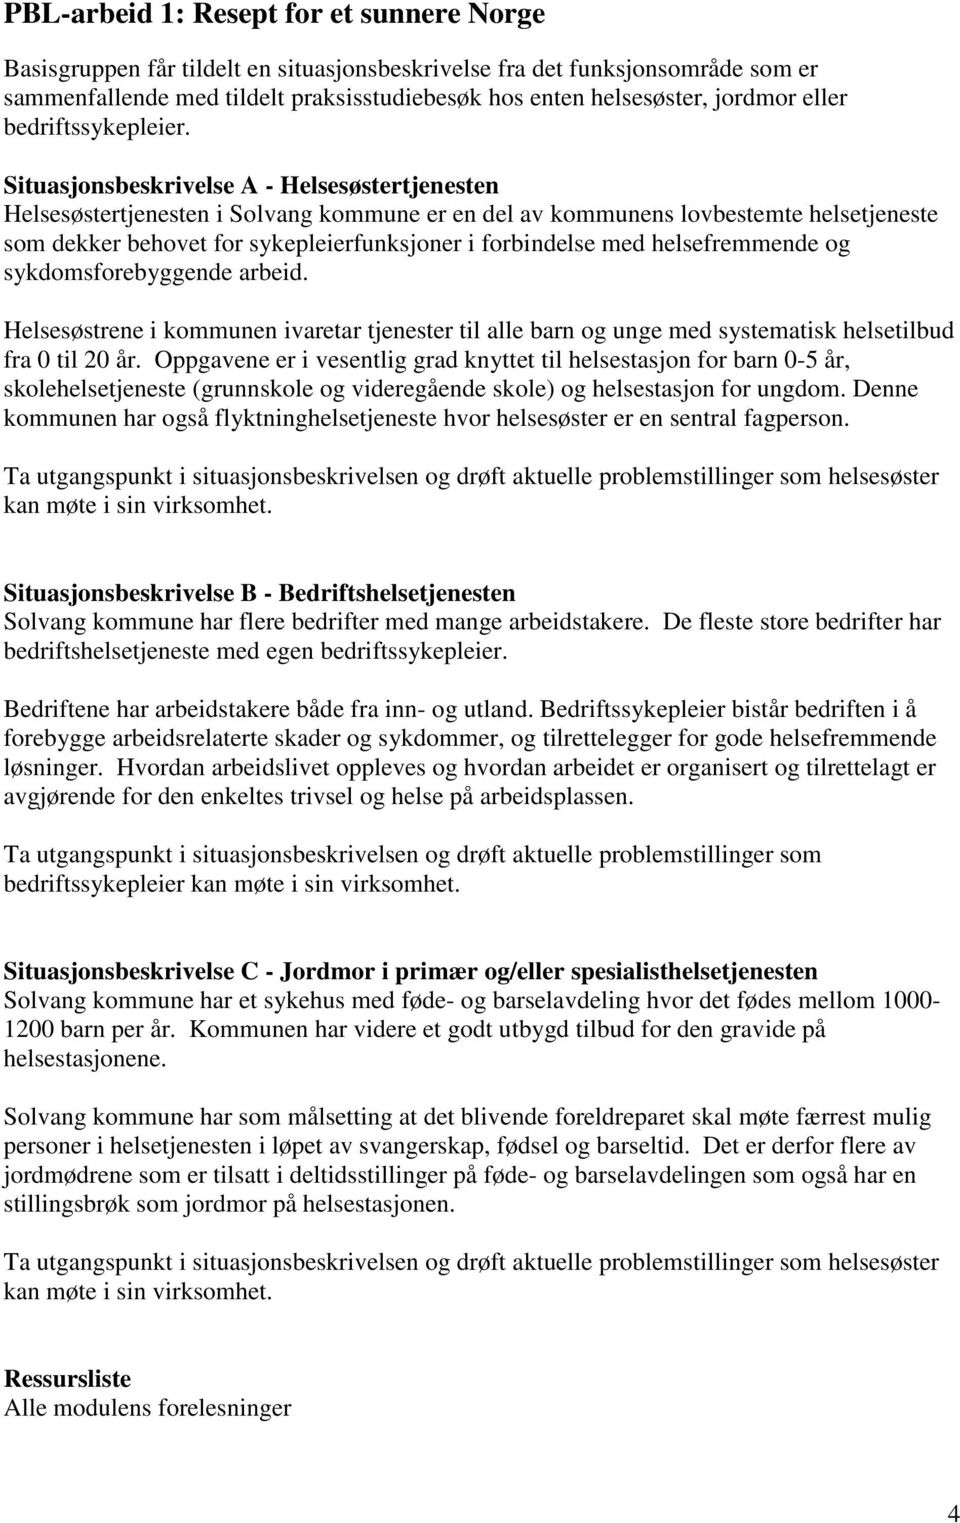 Situasjonsbeskrivelse A - Helsesøstertjenesten Helsesøstertjenesten i Solvang kommune er en del av kommunens lovbestemte helsetjeneste som dekker behovet for sykepleierfunksjoner i forbindelse med